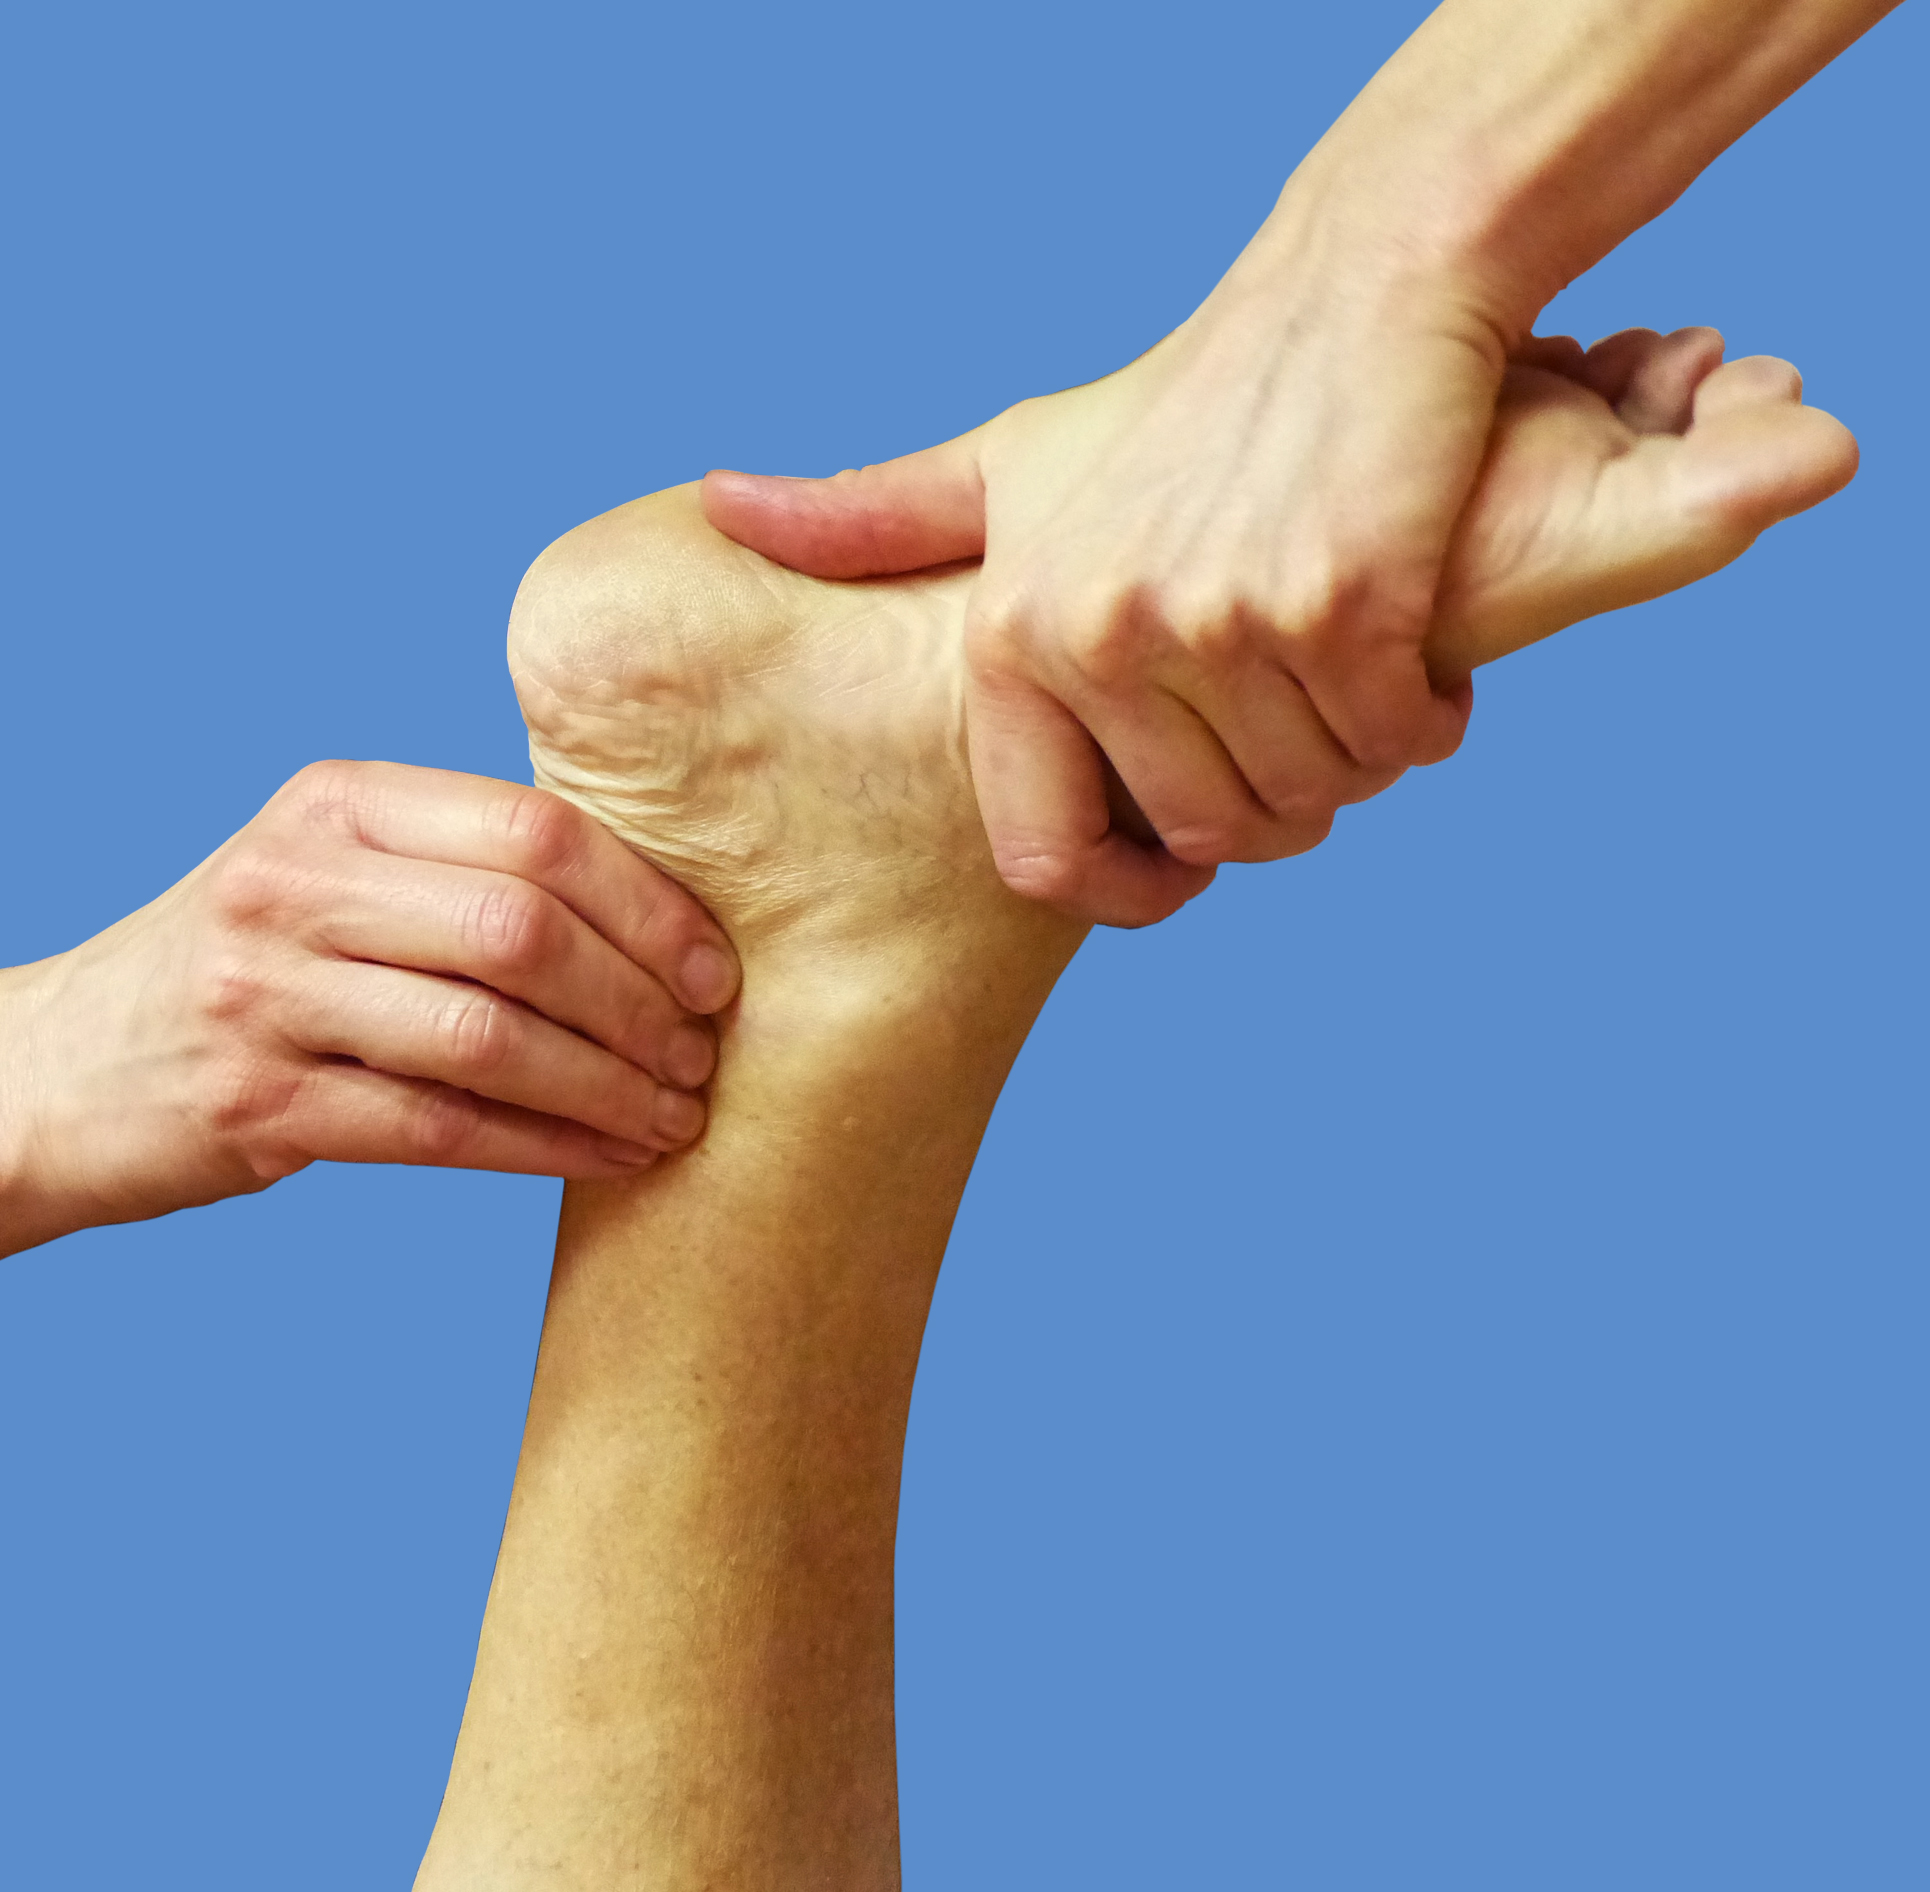 Manuelle Therapie - mit den Händen den Fuß mobilisieren